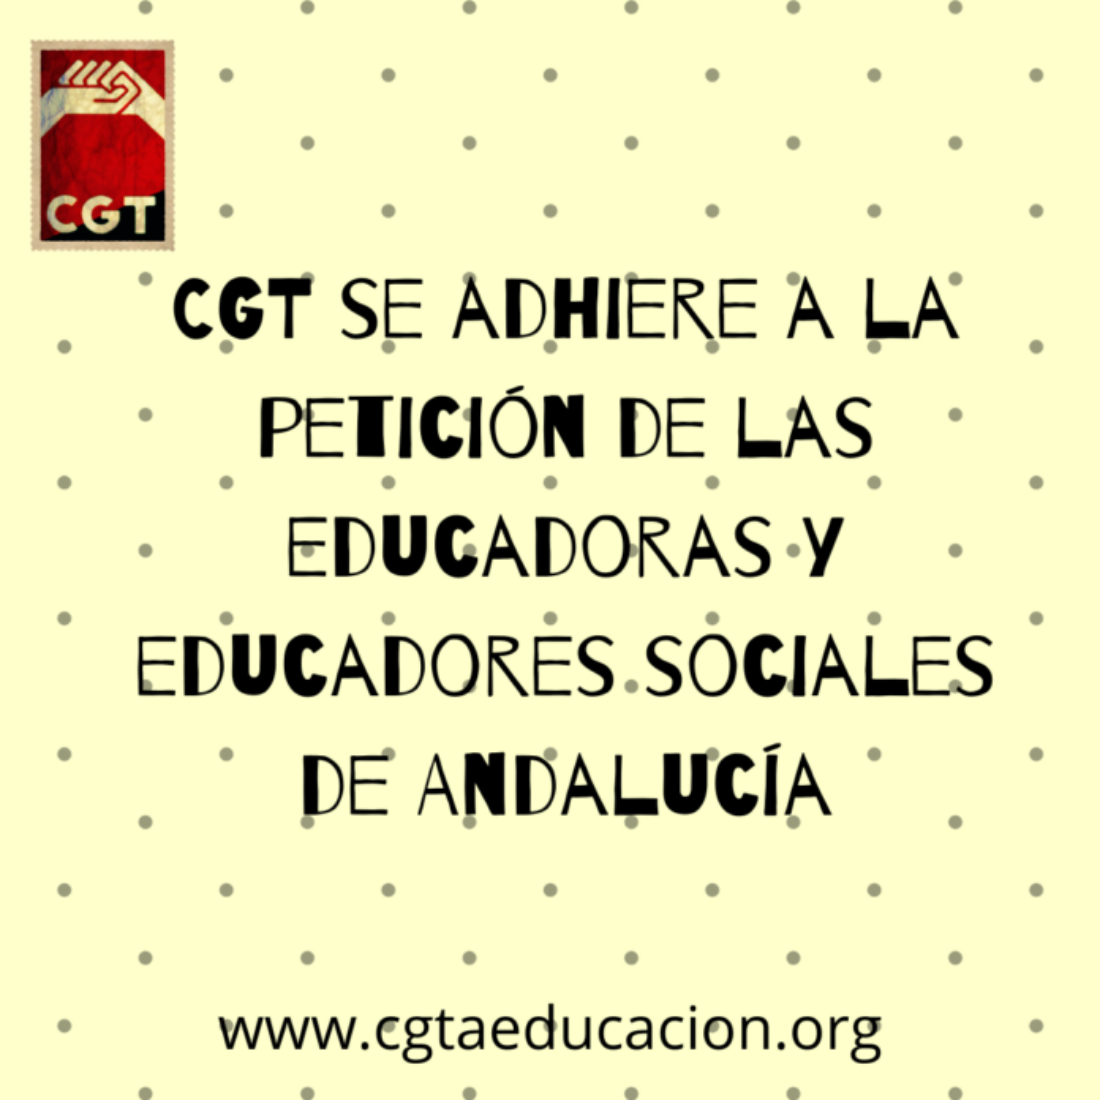 CGT se adhiere a la petición de las educadoras y educadores sociales de Andalucía